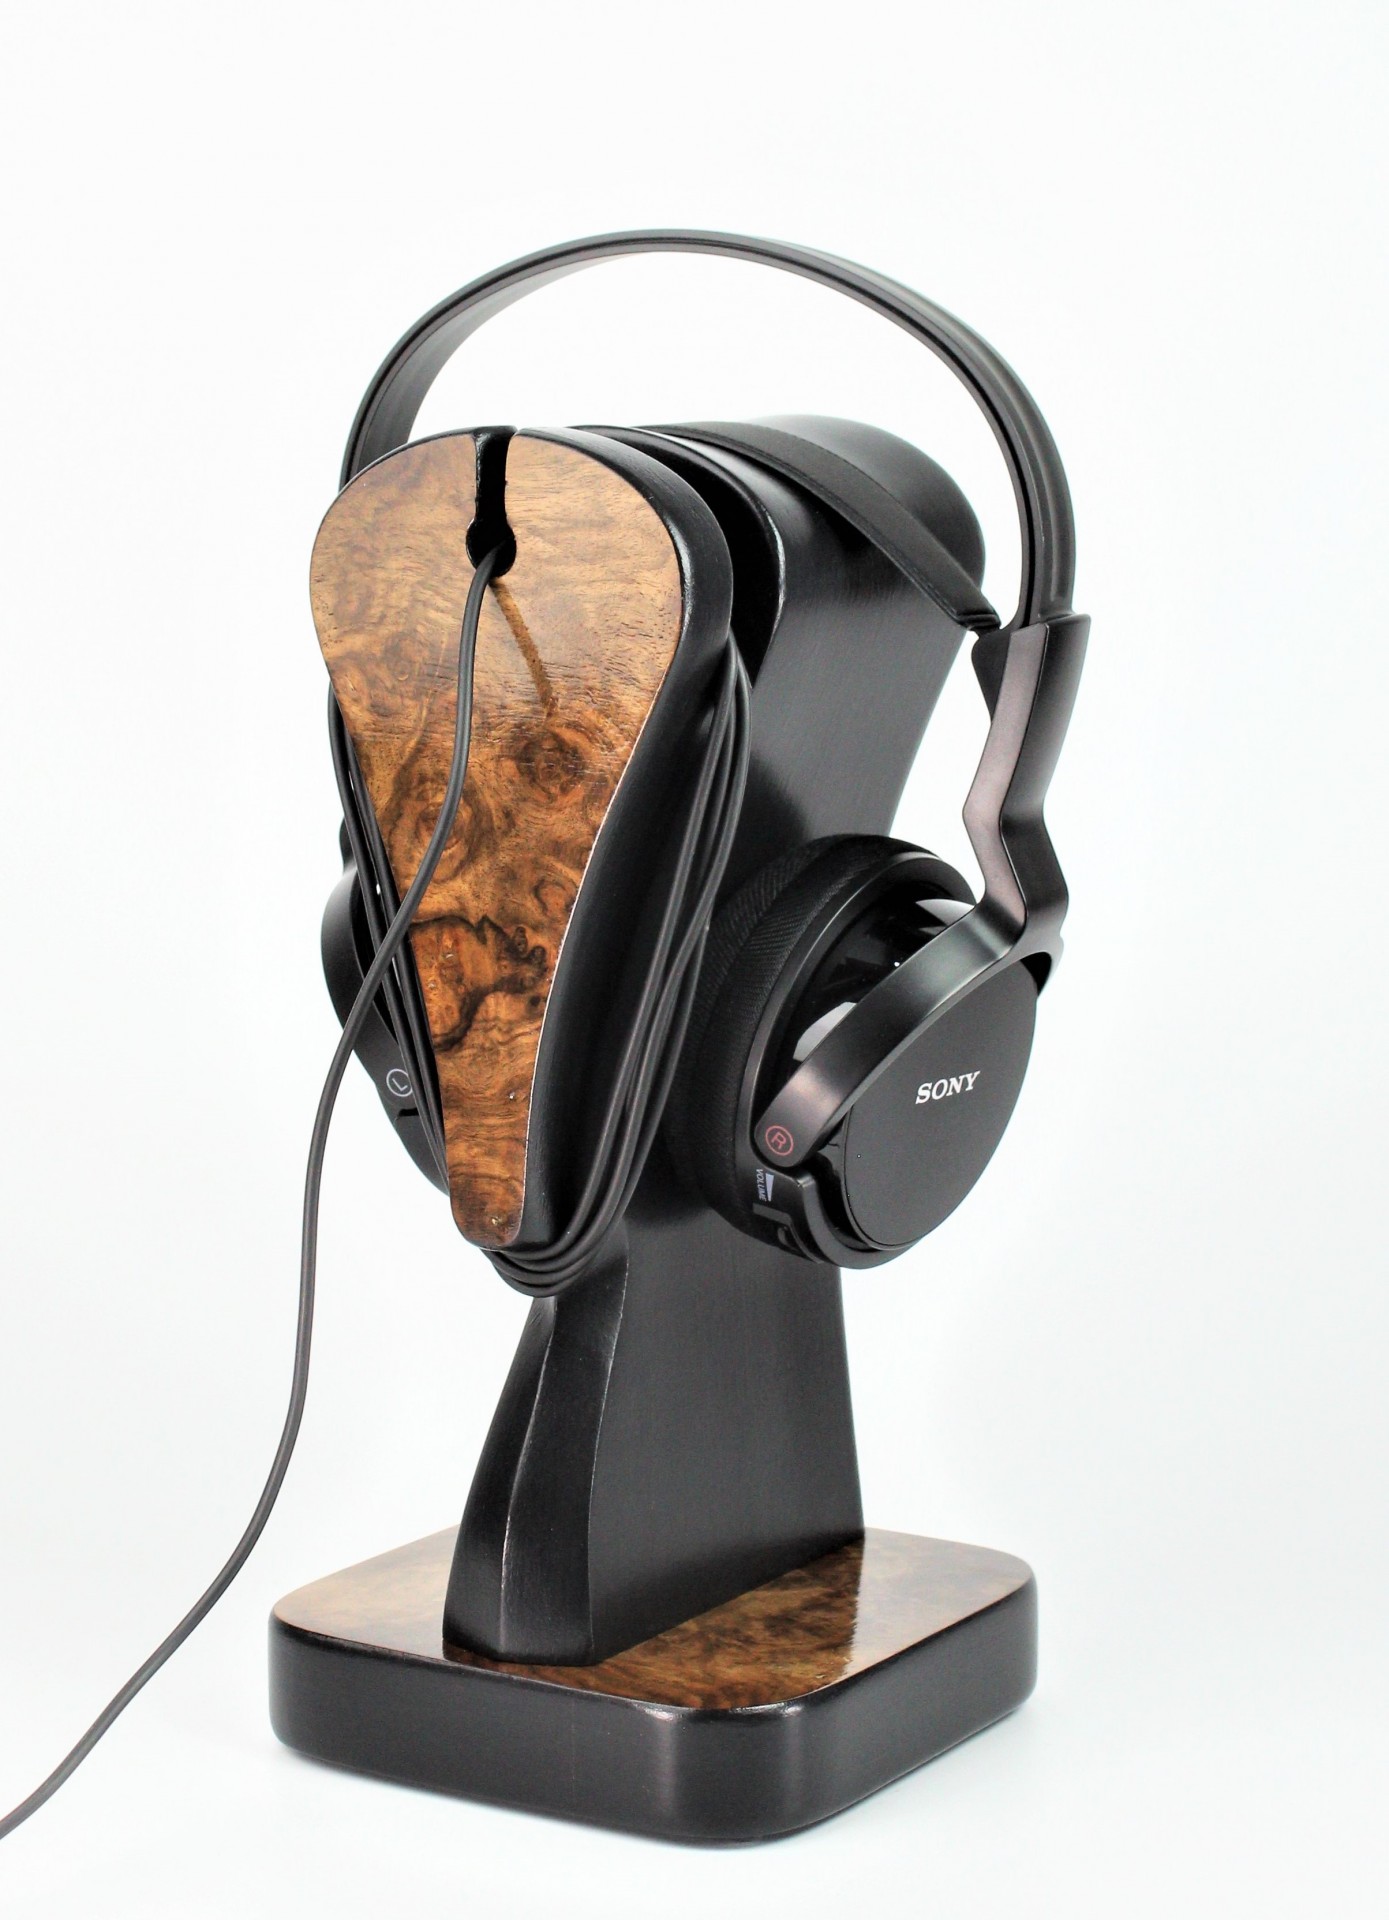 Stojak na słuchawki Gambit III. Orzech amerykański - fornir blur, Art deco. Wykonane ręcznie